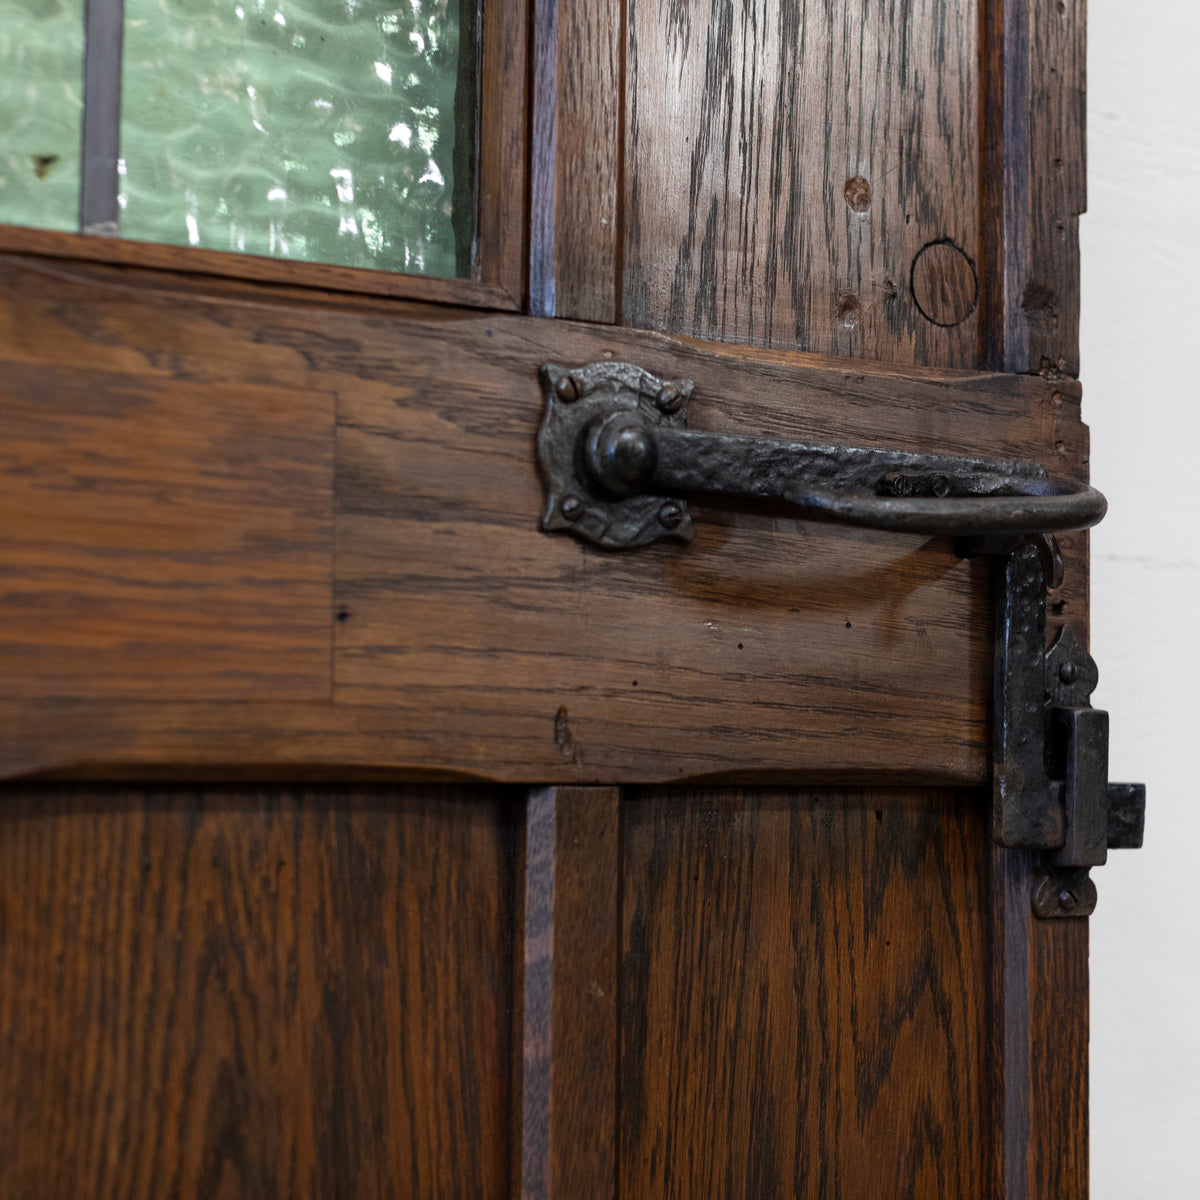 Antique Oak Latch Door - 205cm x 91cm | The Architectural Forum